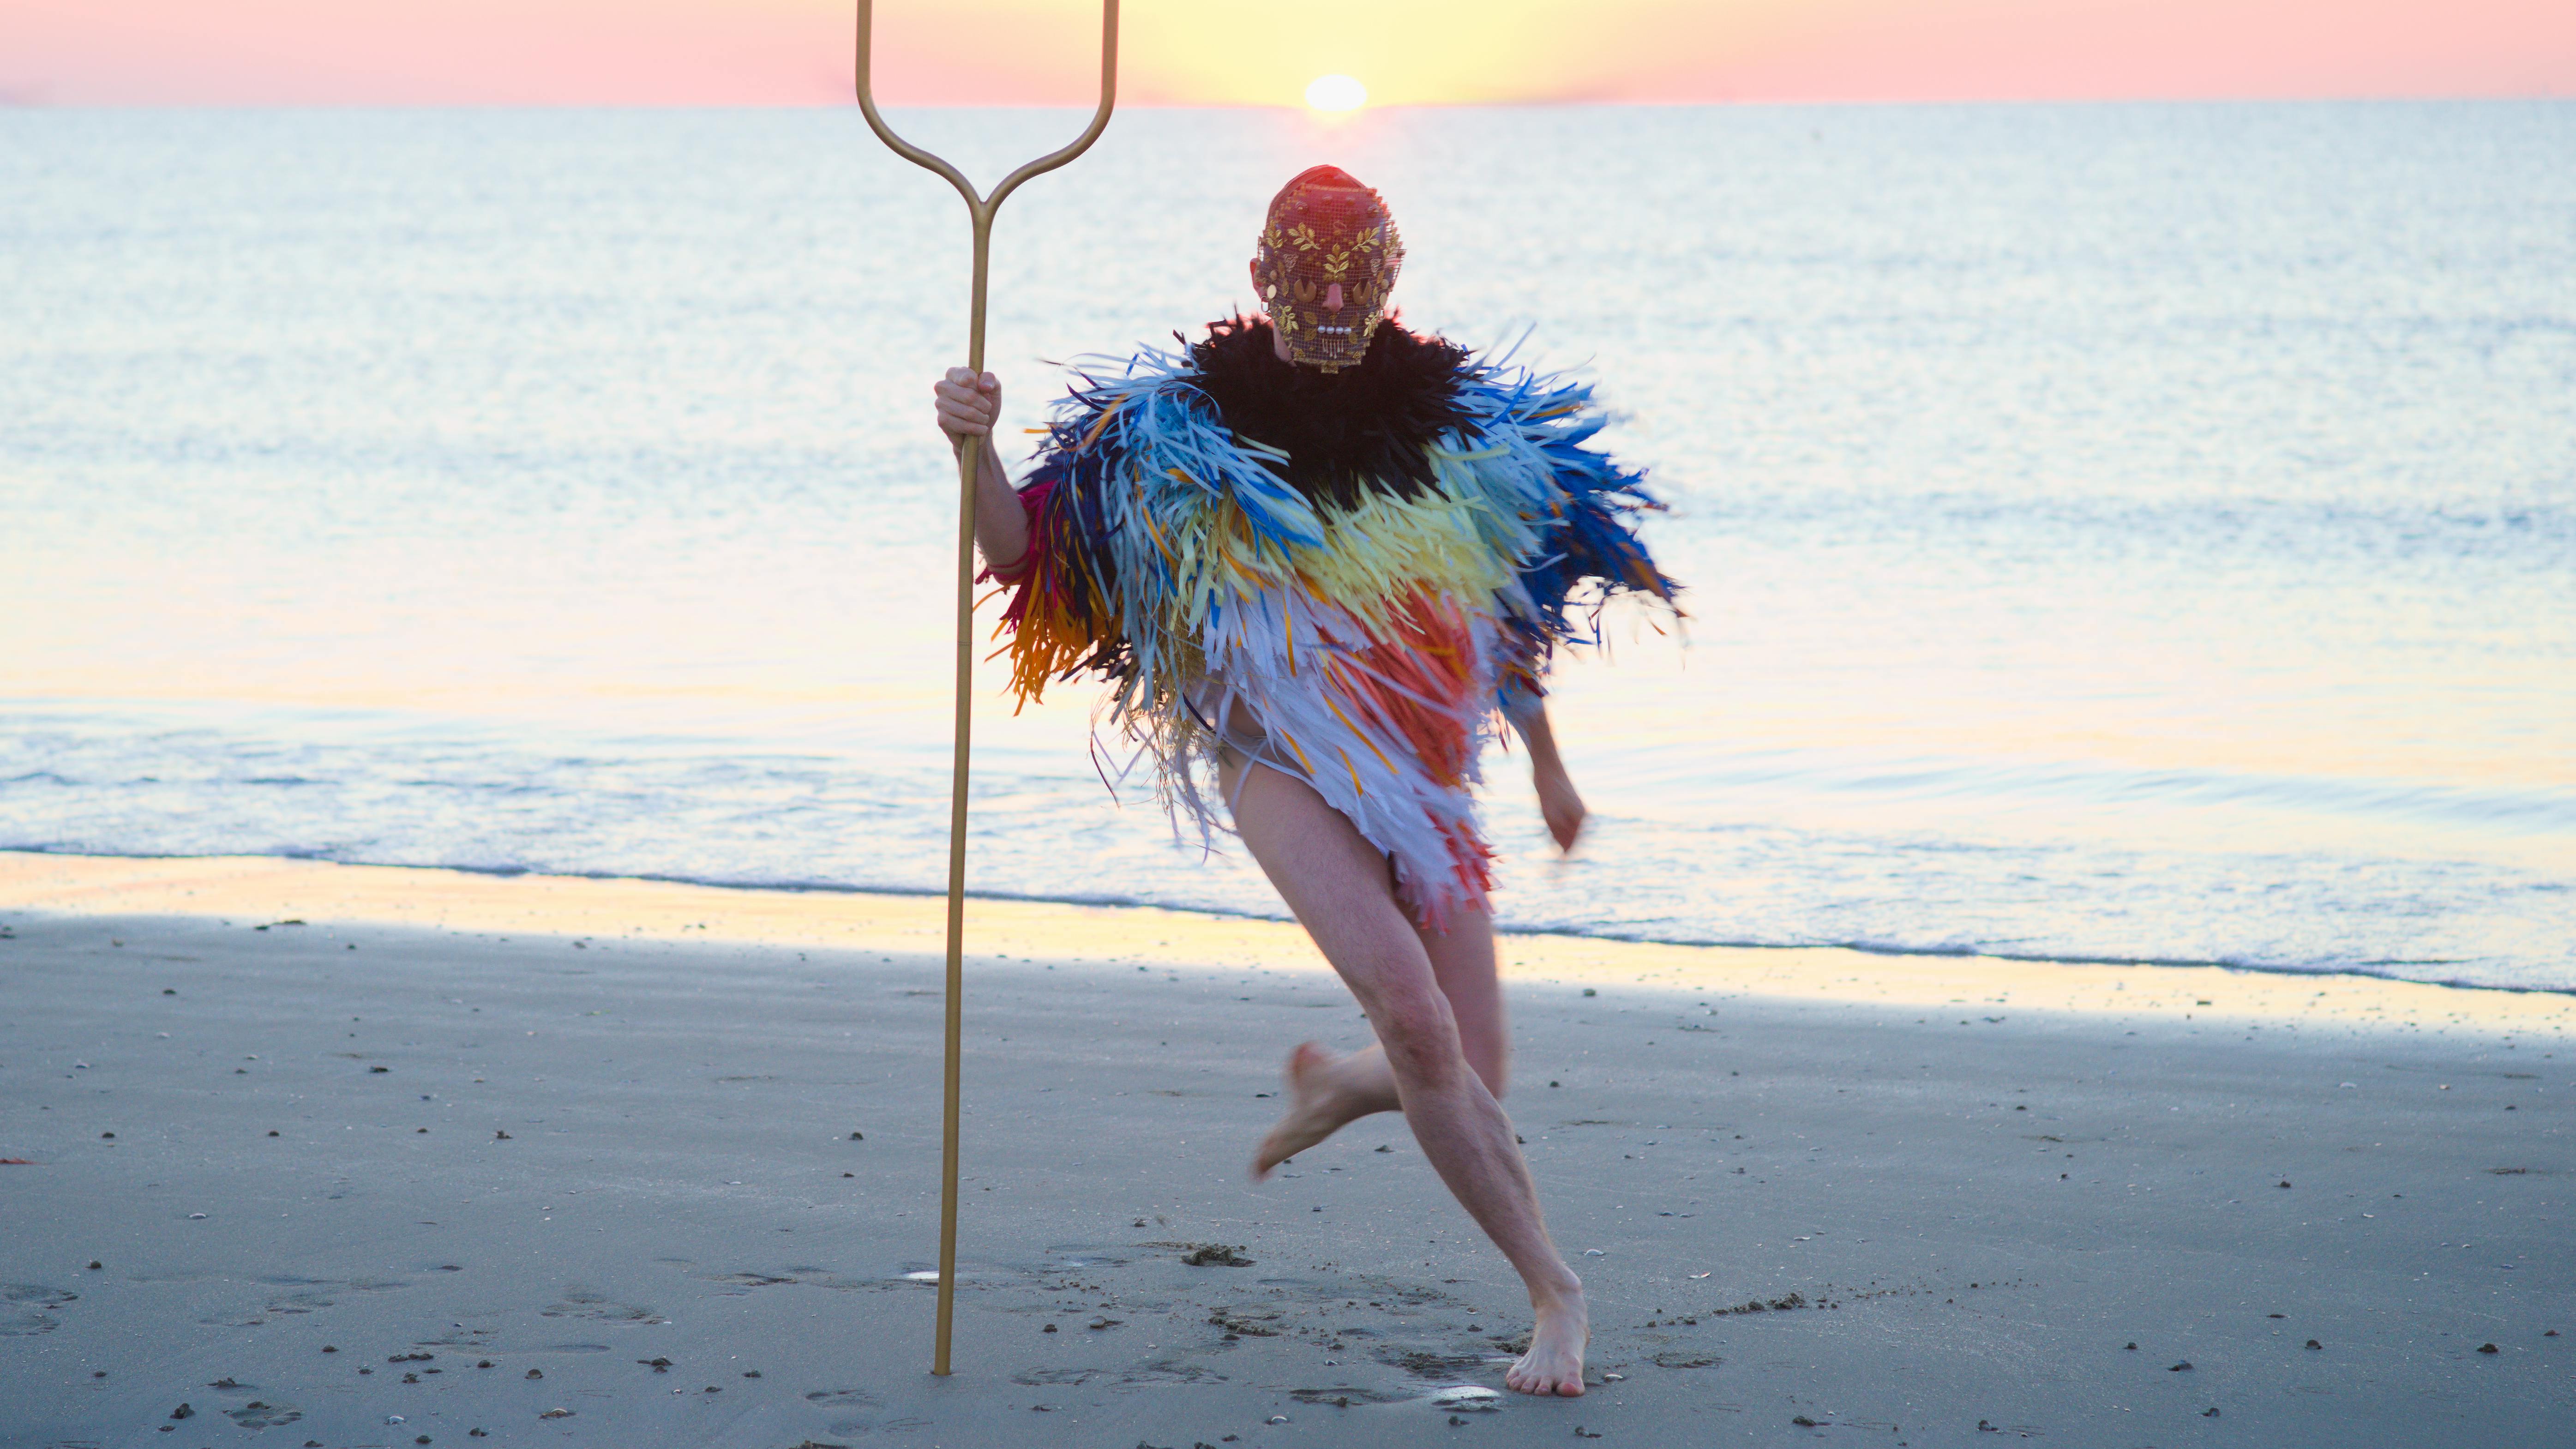 Una figura umana, con indosso una maschera e un poncho fatto di sottili striscioline colorate, corre su una spiaggia. In mano tiene una specie di forcone  a due punte.